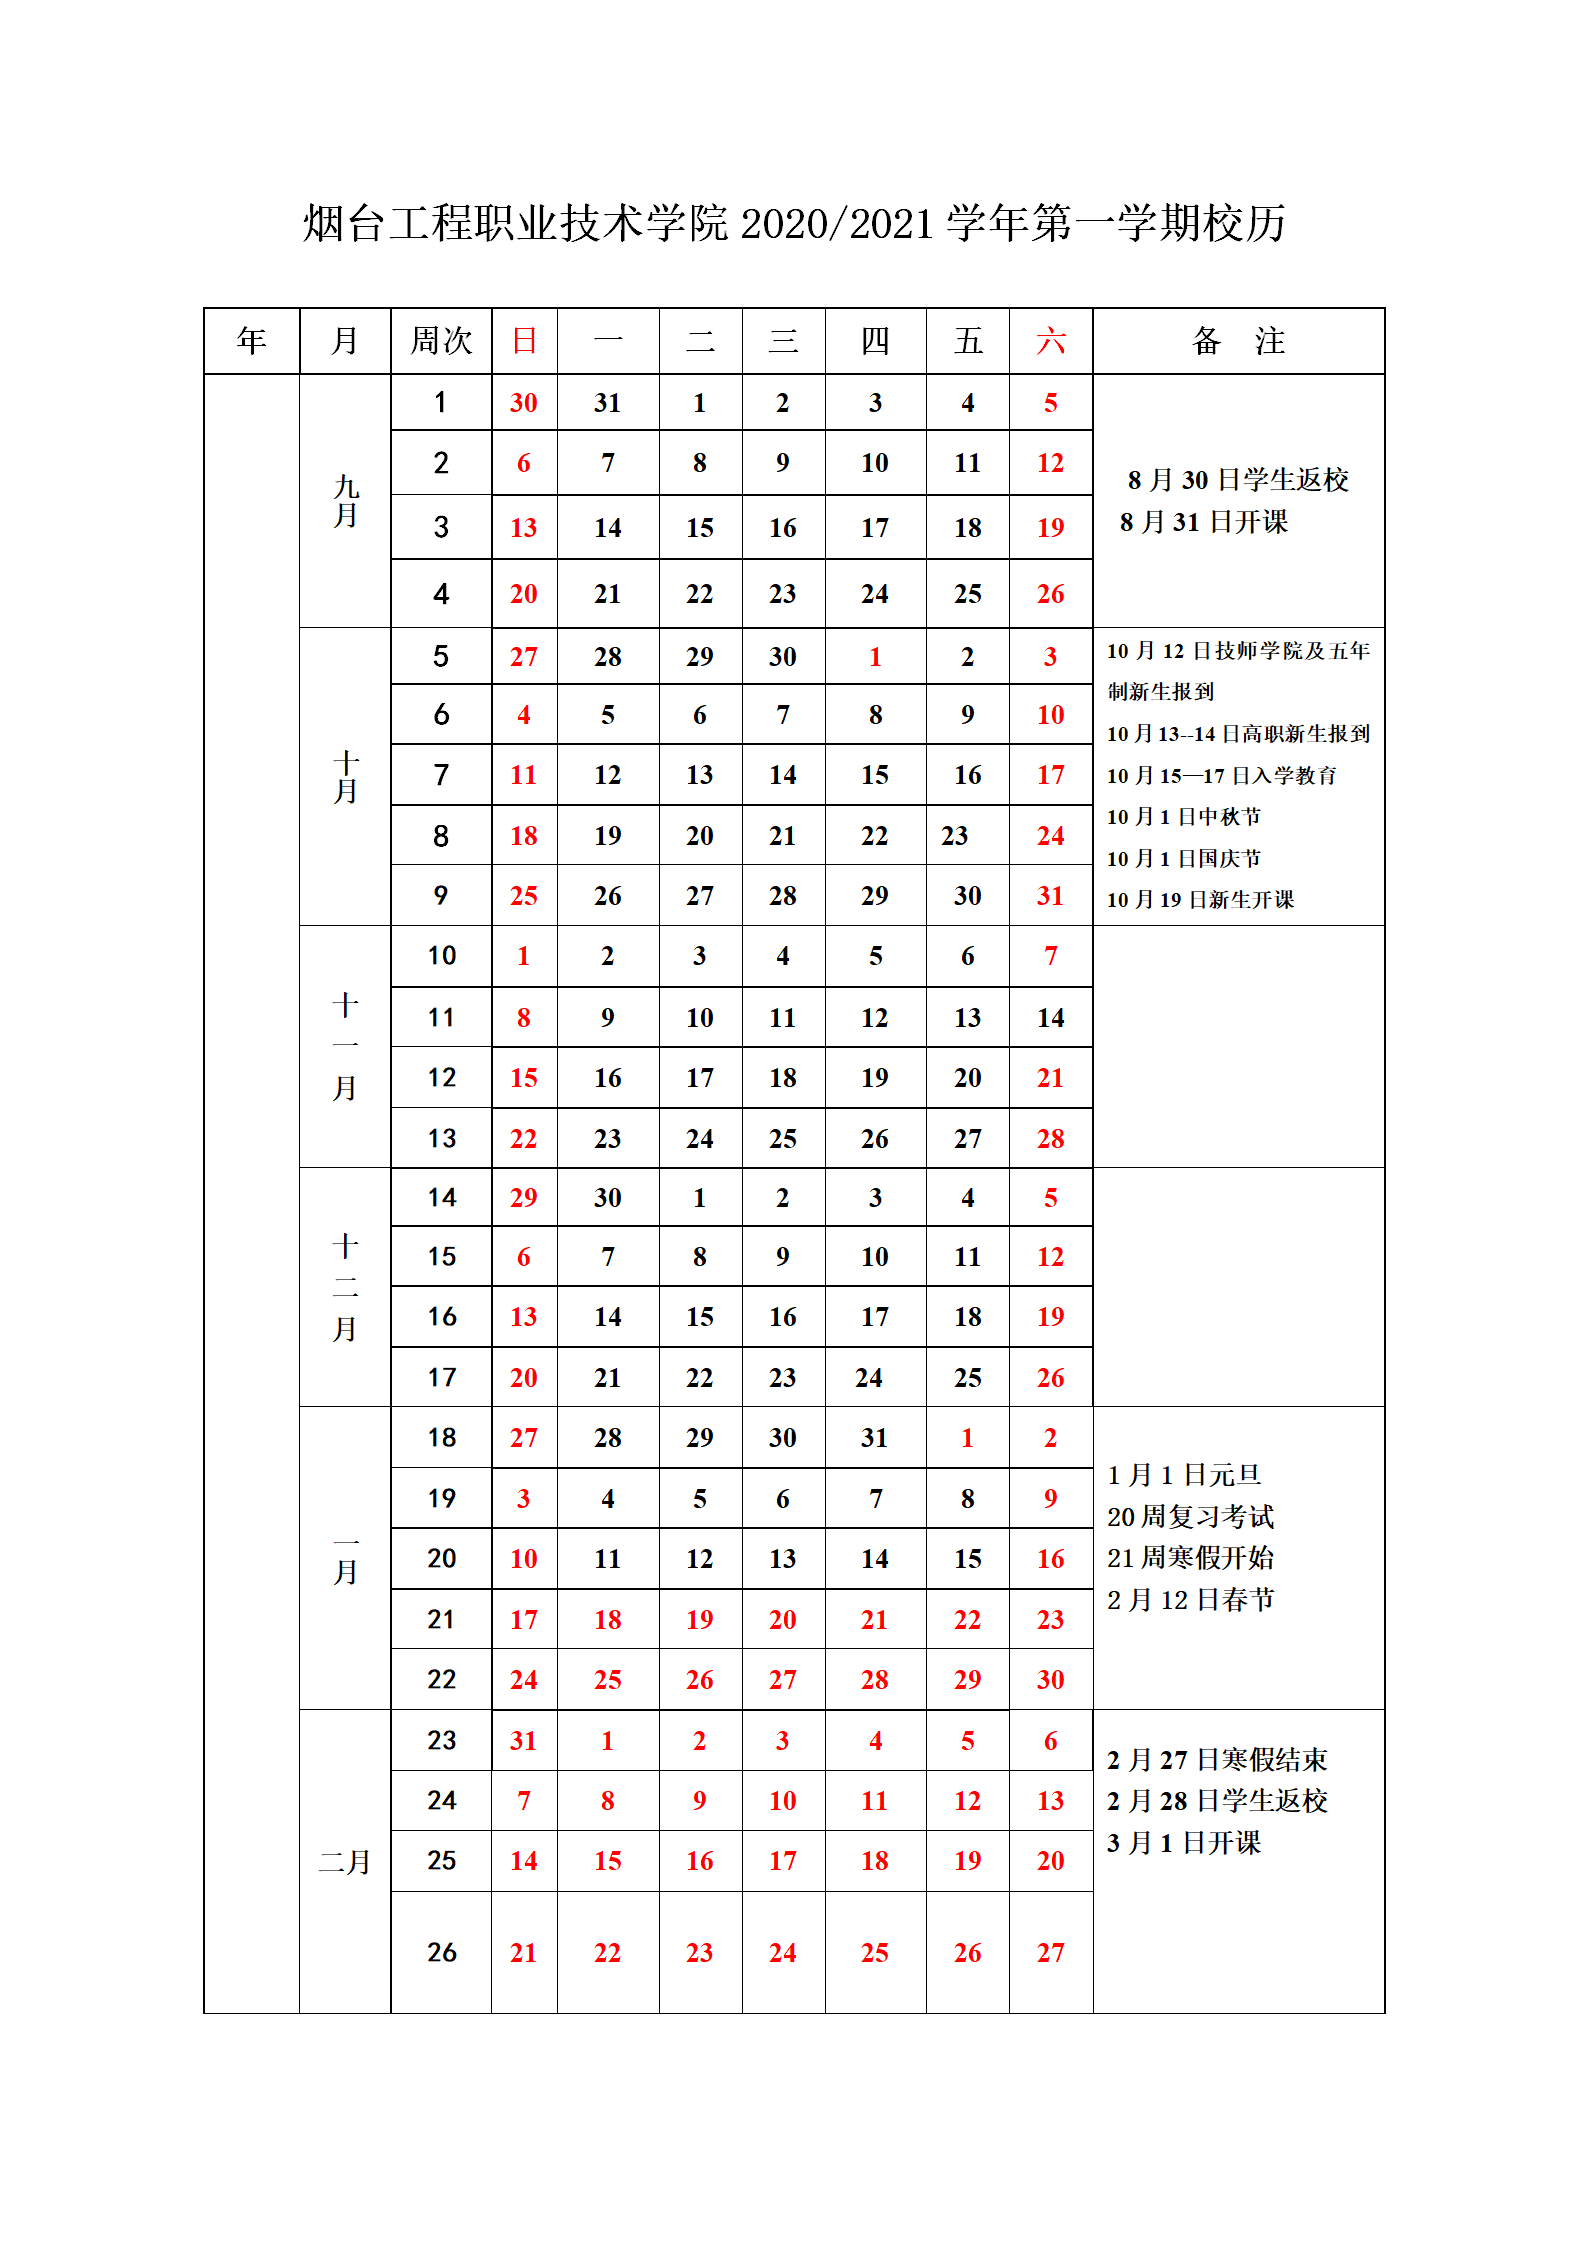 44118太阳成城集团2020--2021学年校历(1)_01.png